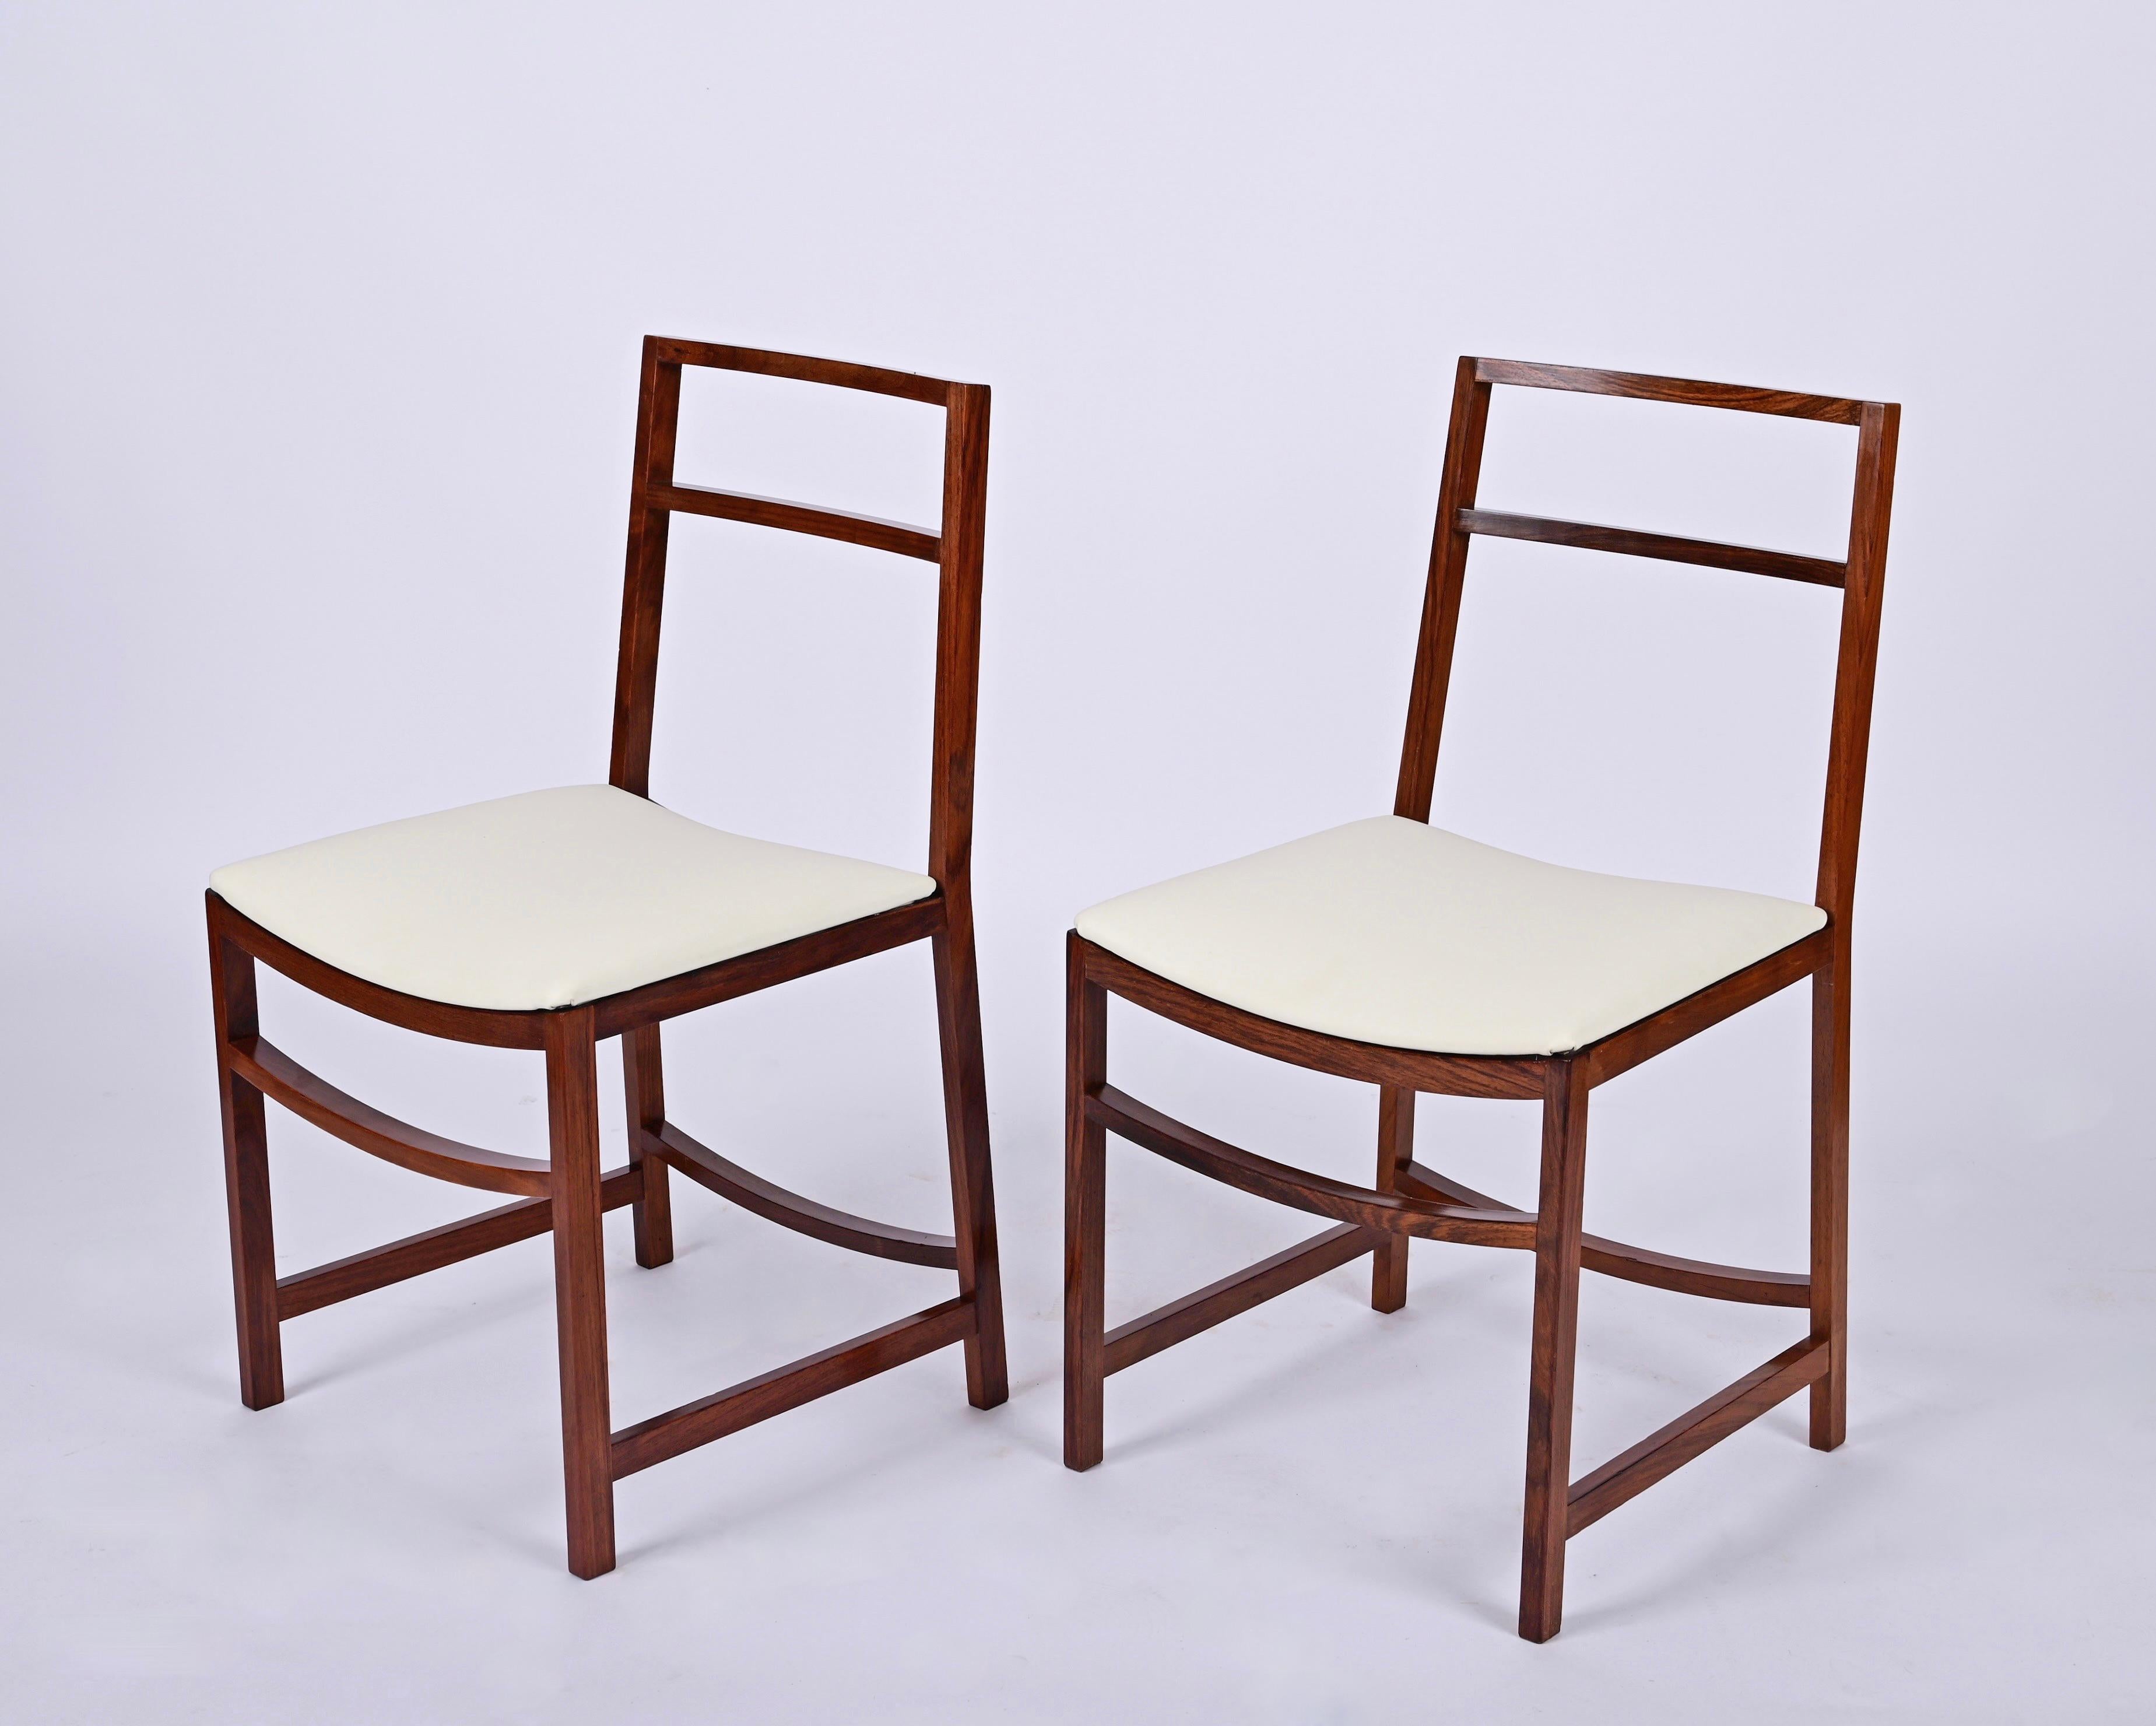 Magnifique ensemble de 8 chaises du milieu du siècle conçues par Renato Venturi pour MIM Roma dans les années 1960 en Italie.

Ces chaises emblématiques sont dotées d'une structure en bois massif et d'assises en similicuir couleur ivoire